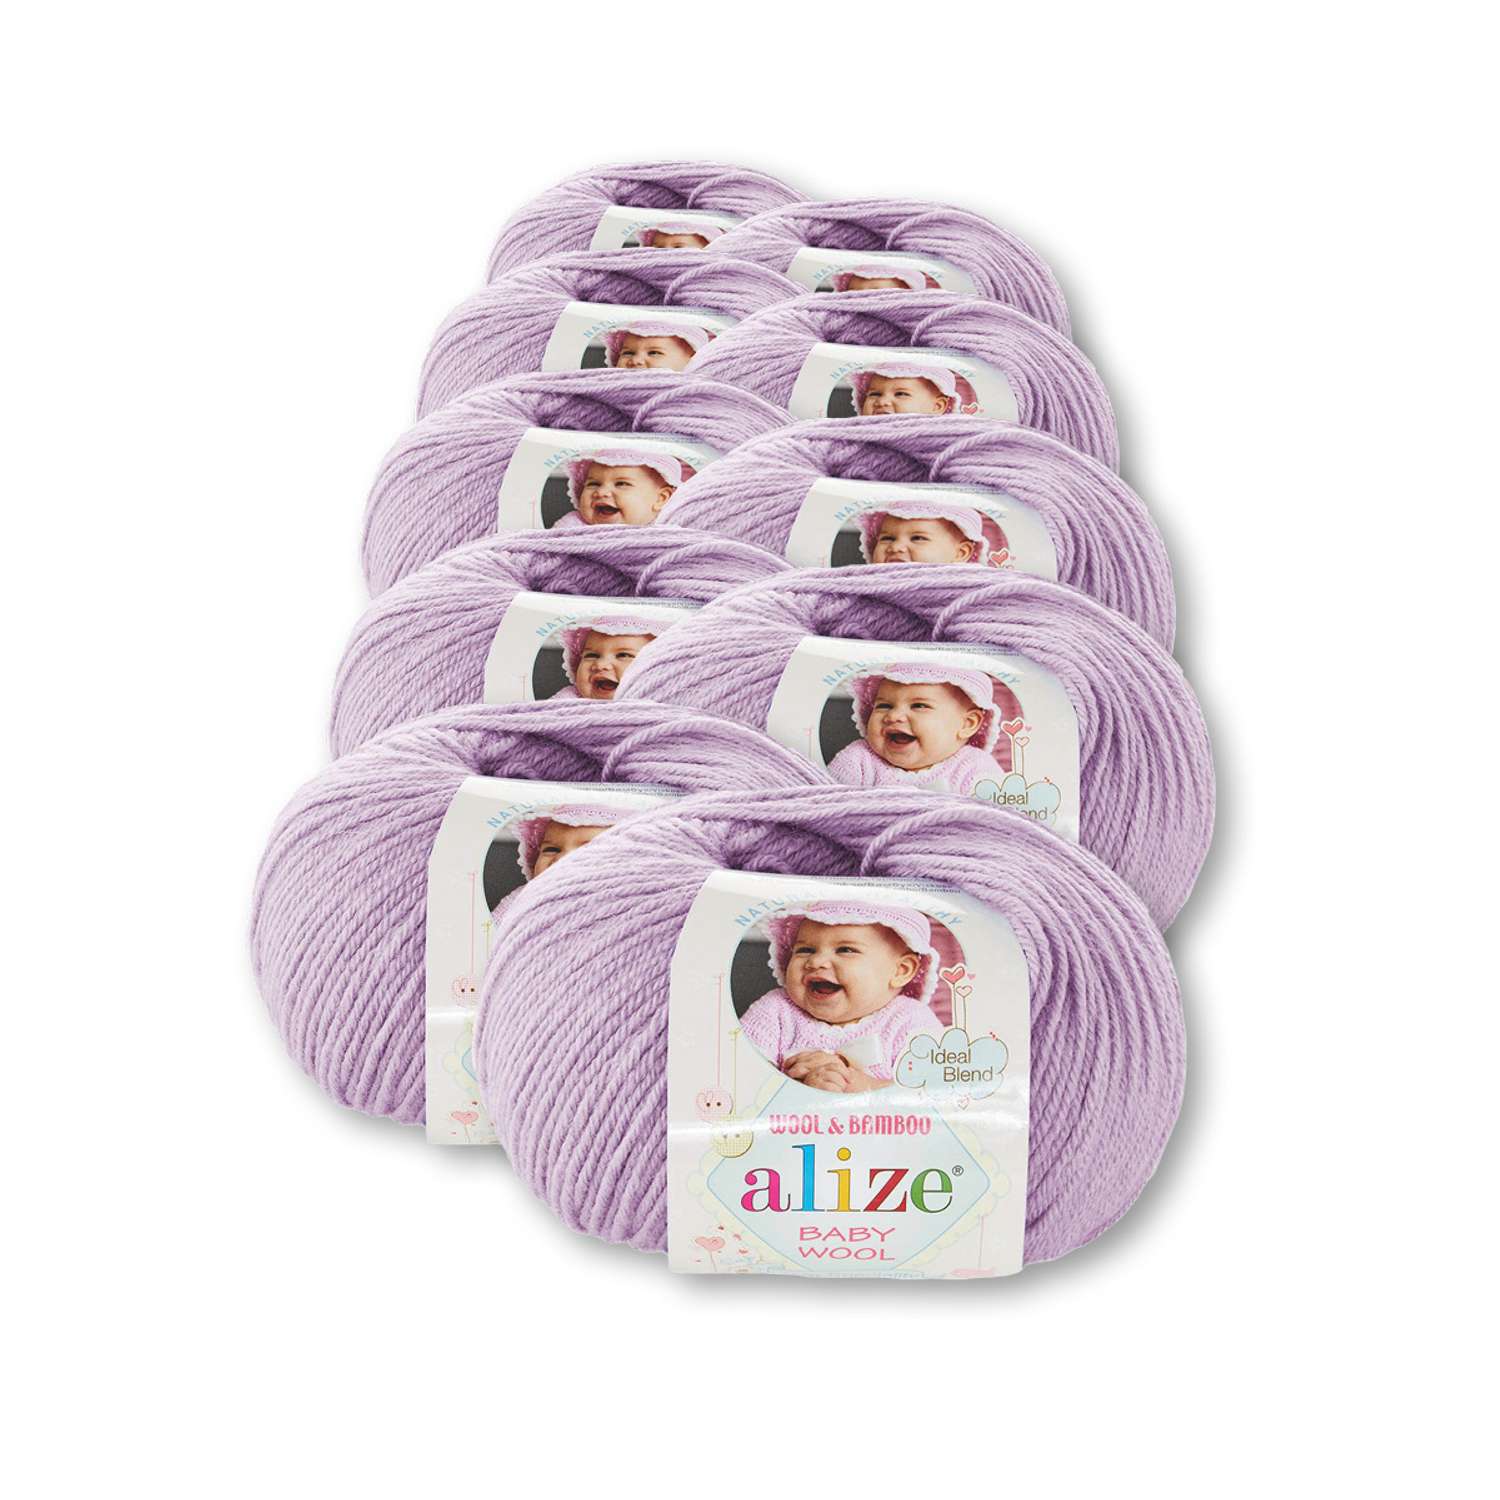 Пряжа для вязания Alize baby wool бамбук шерсть акрил мягкая 50 гр 175 м 146 лиловый 10 мотков - фото 2